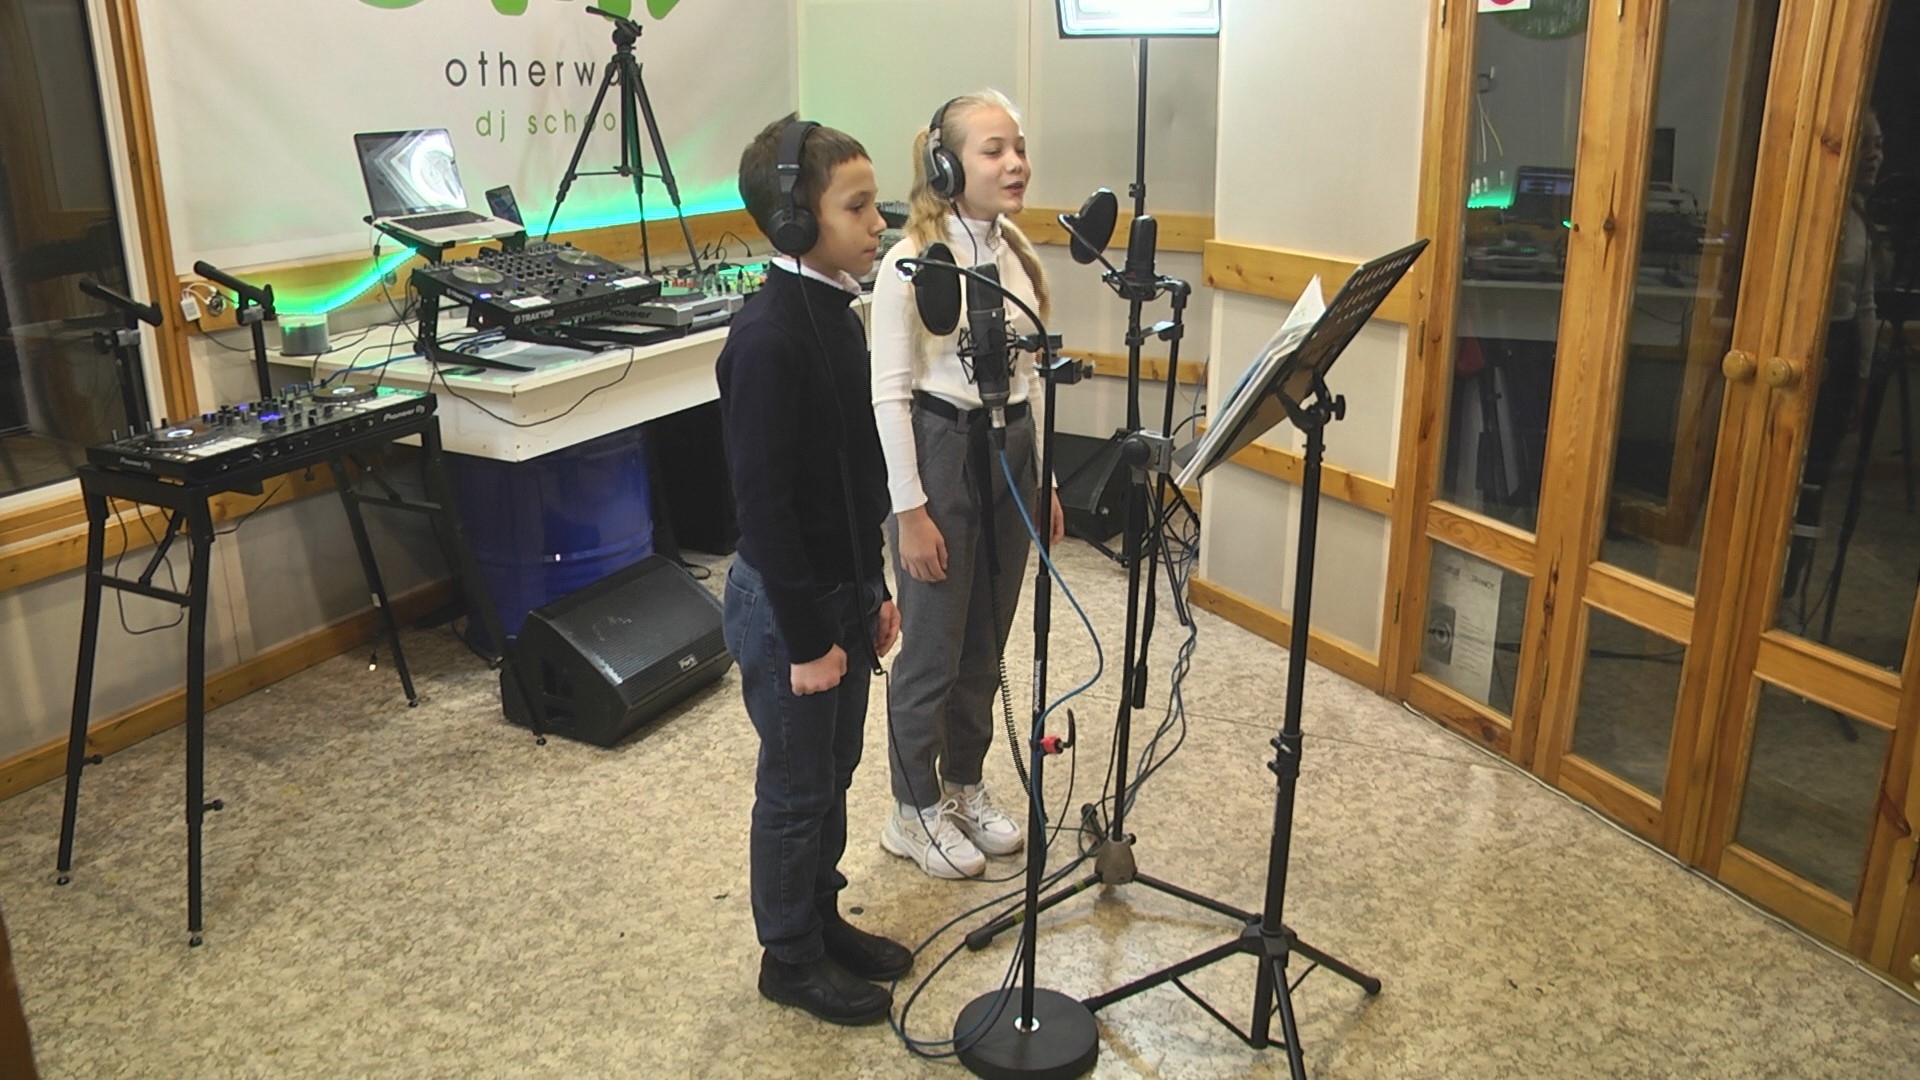 Аудіо-казки для діток з вадами зору звучатимуть голосами вінницьких школярів